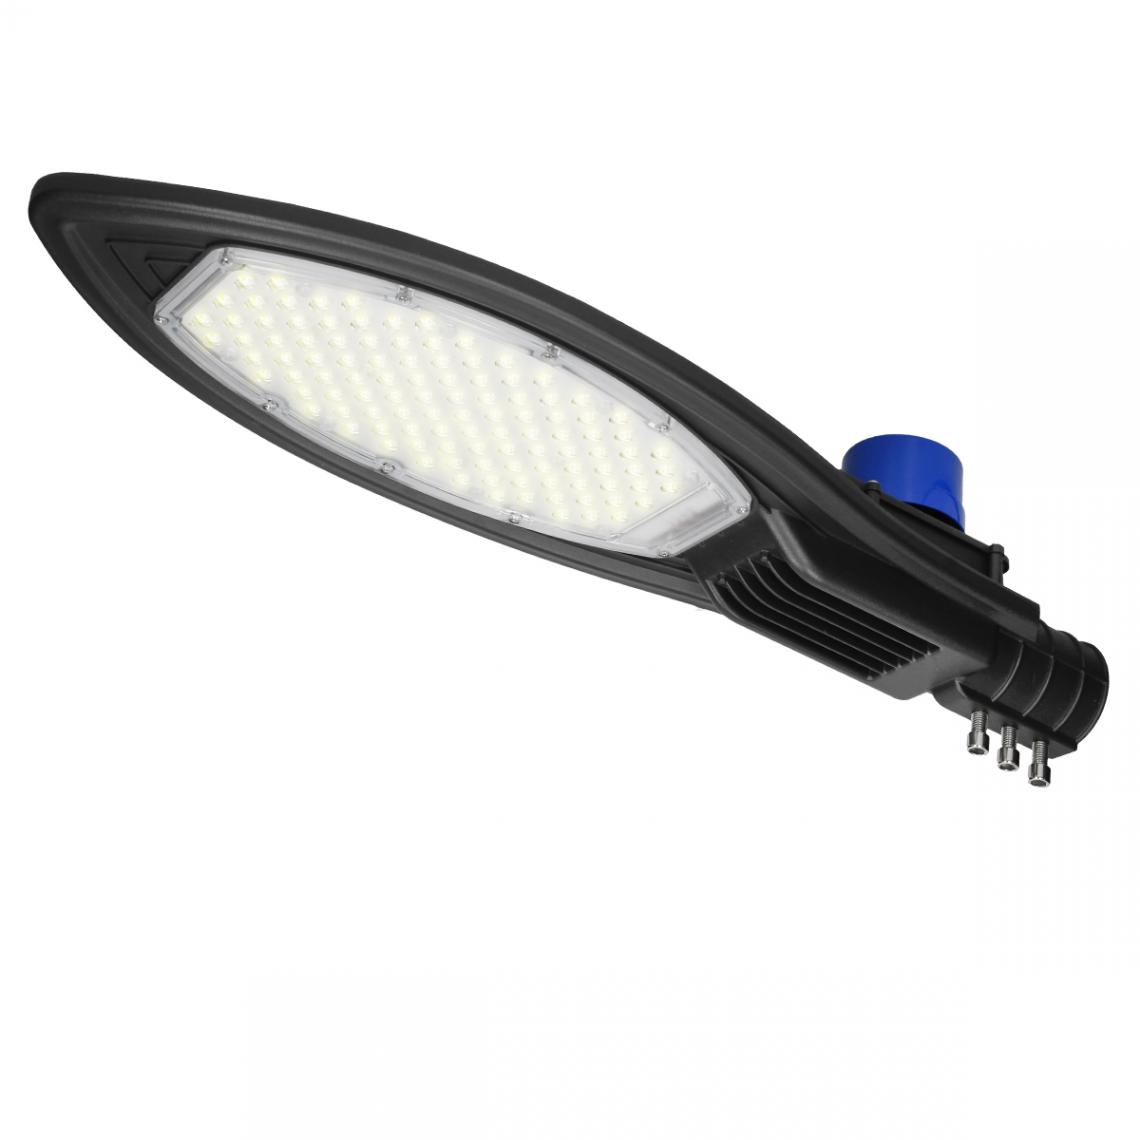 Ecd Germany - LED rue lampadaire rèverbere lampe extérieur blanc chaud 100 W avec capteur - Ruban LED